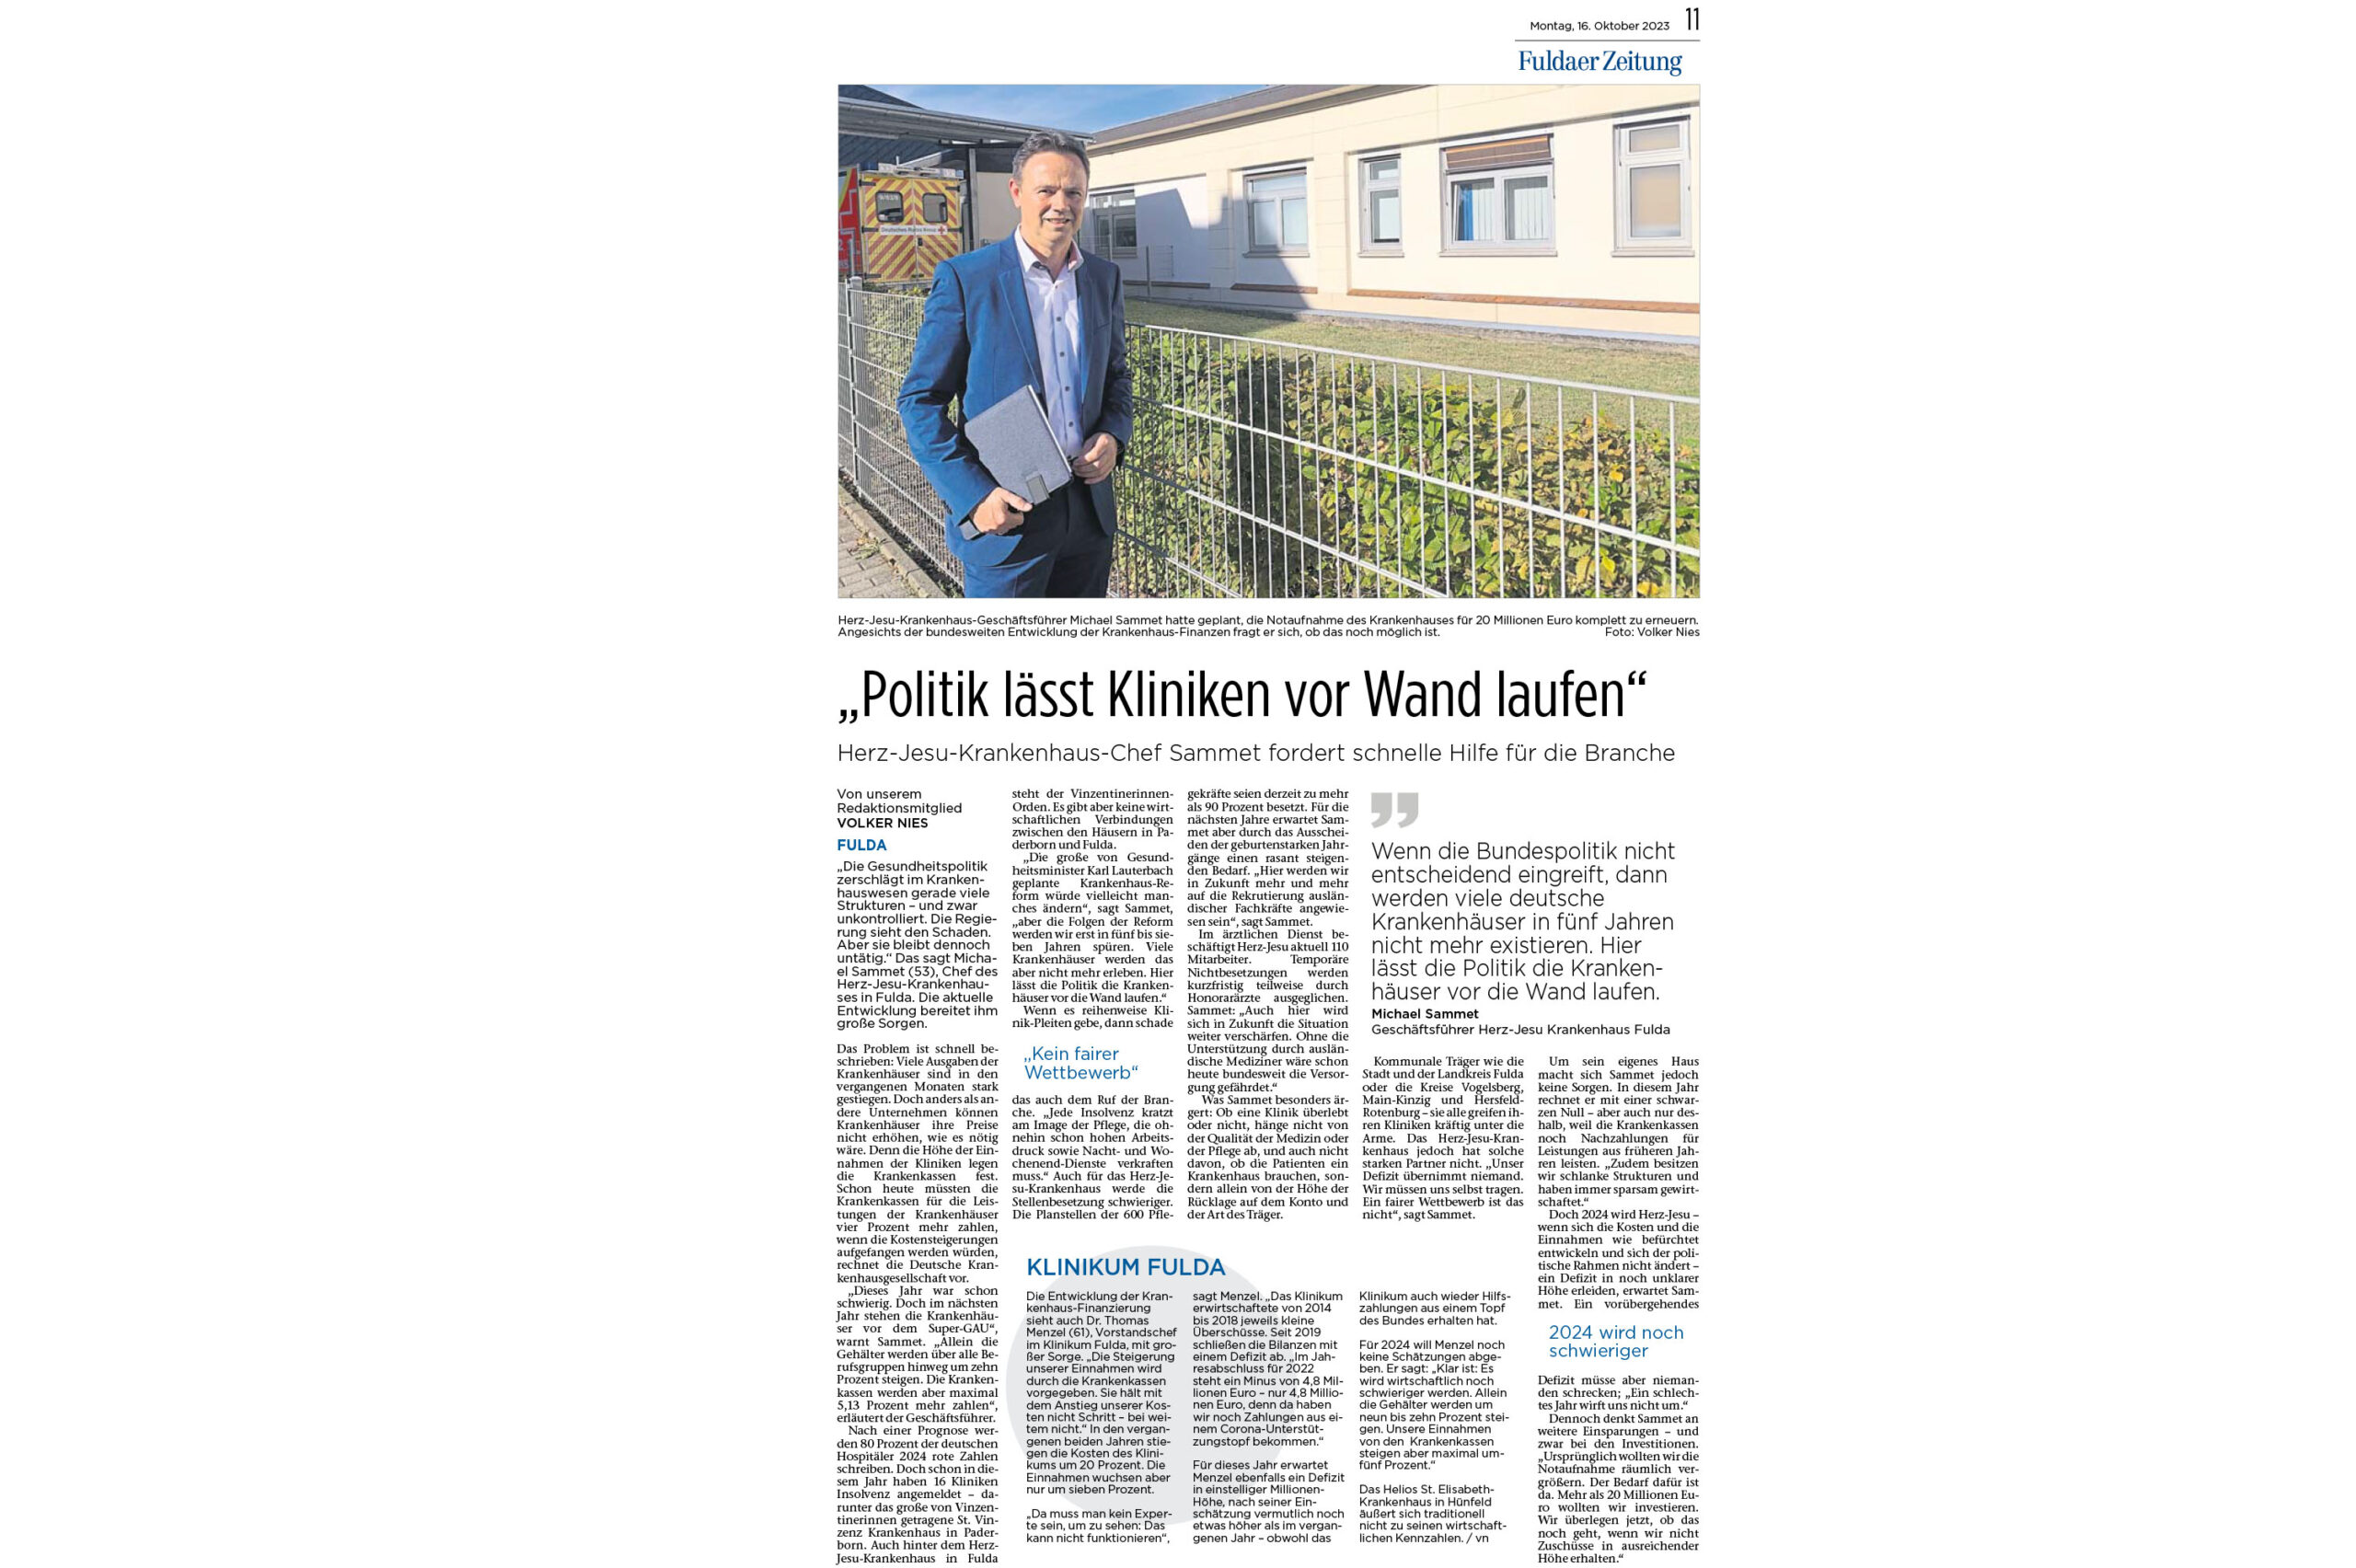 Fuldaer Zeitung: Sammet fordert schnelle Hilfe für die Branche / Politik lässt Kliniken vor Wand laufen / Krankenhausfinanzierung